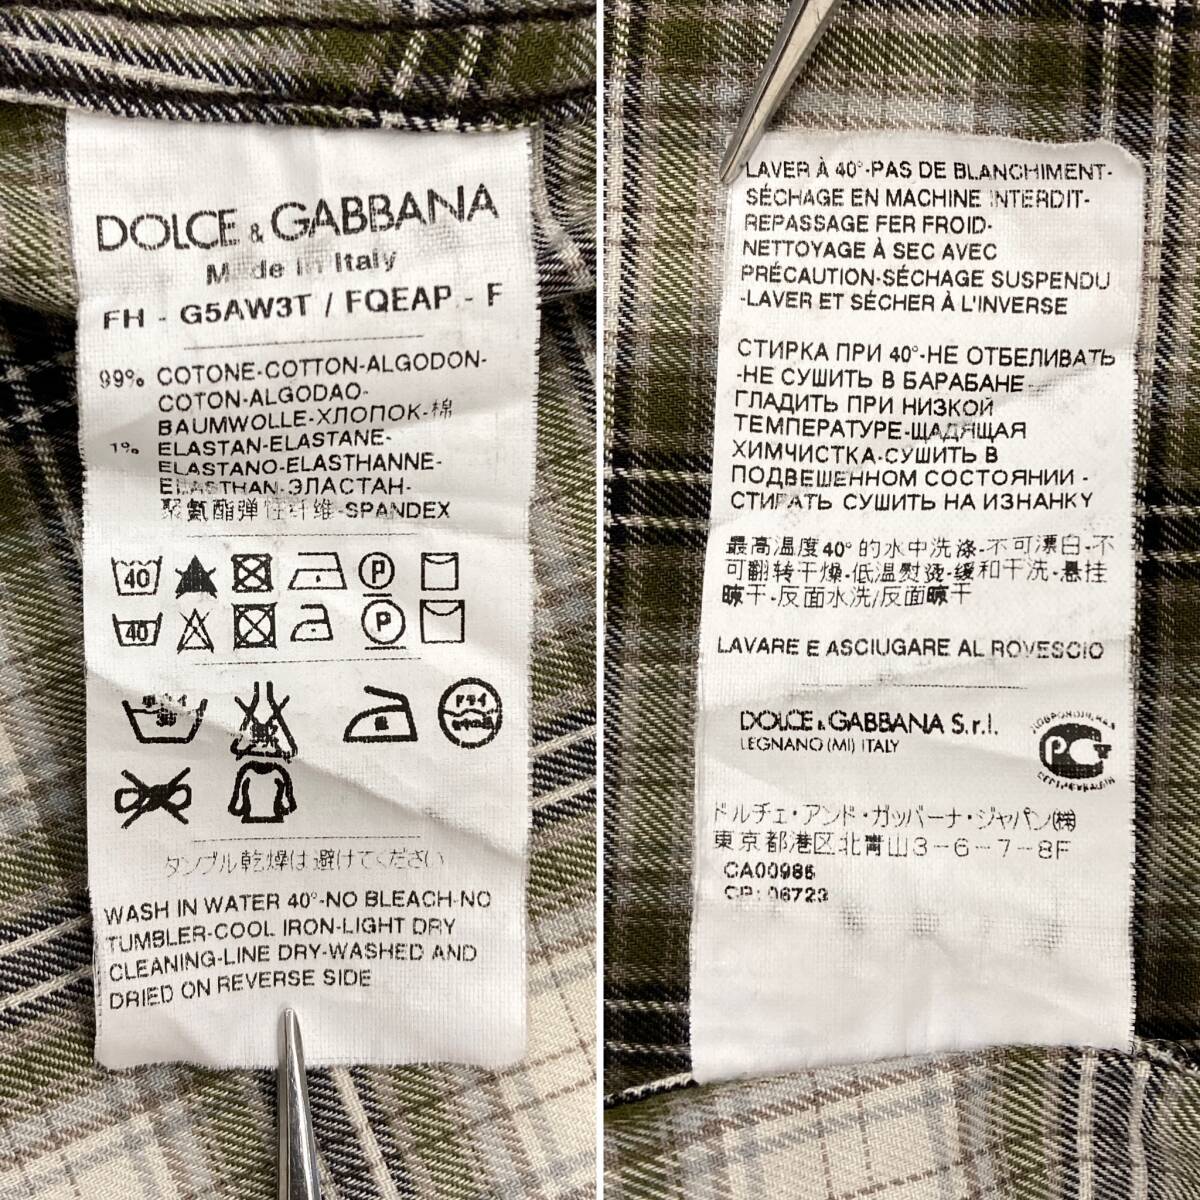 DOLCE&GABBANA SICILIA Italy made check Western long sleeve shirt men's 37 size Dolce & Gabbana Dolce&Gabbana D&G 4010118